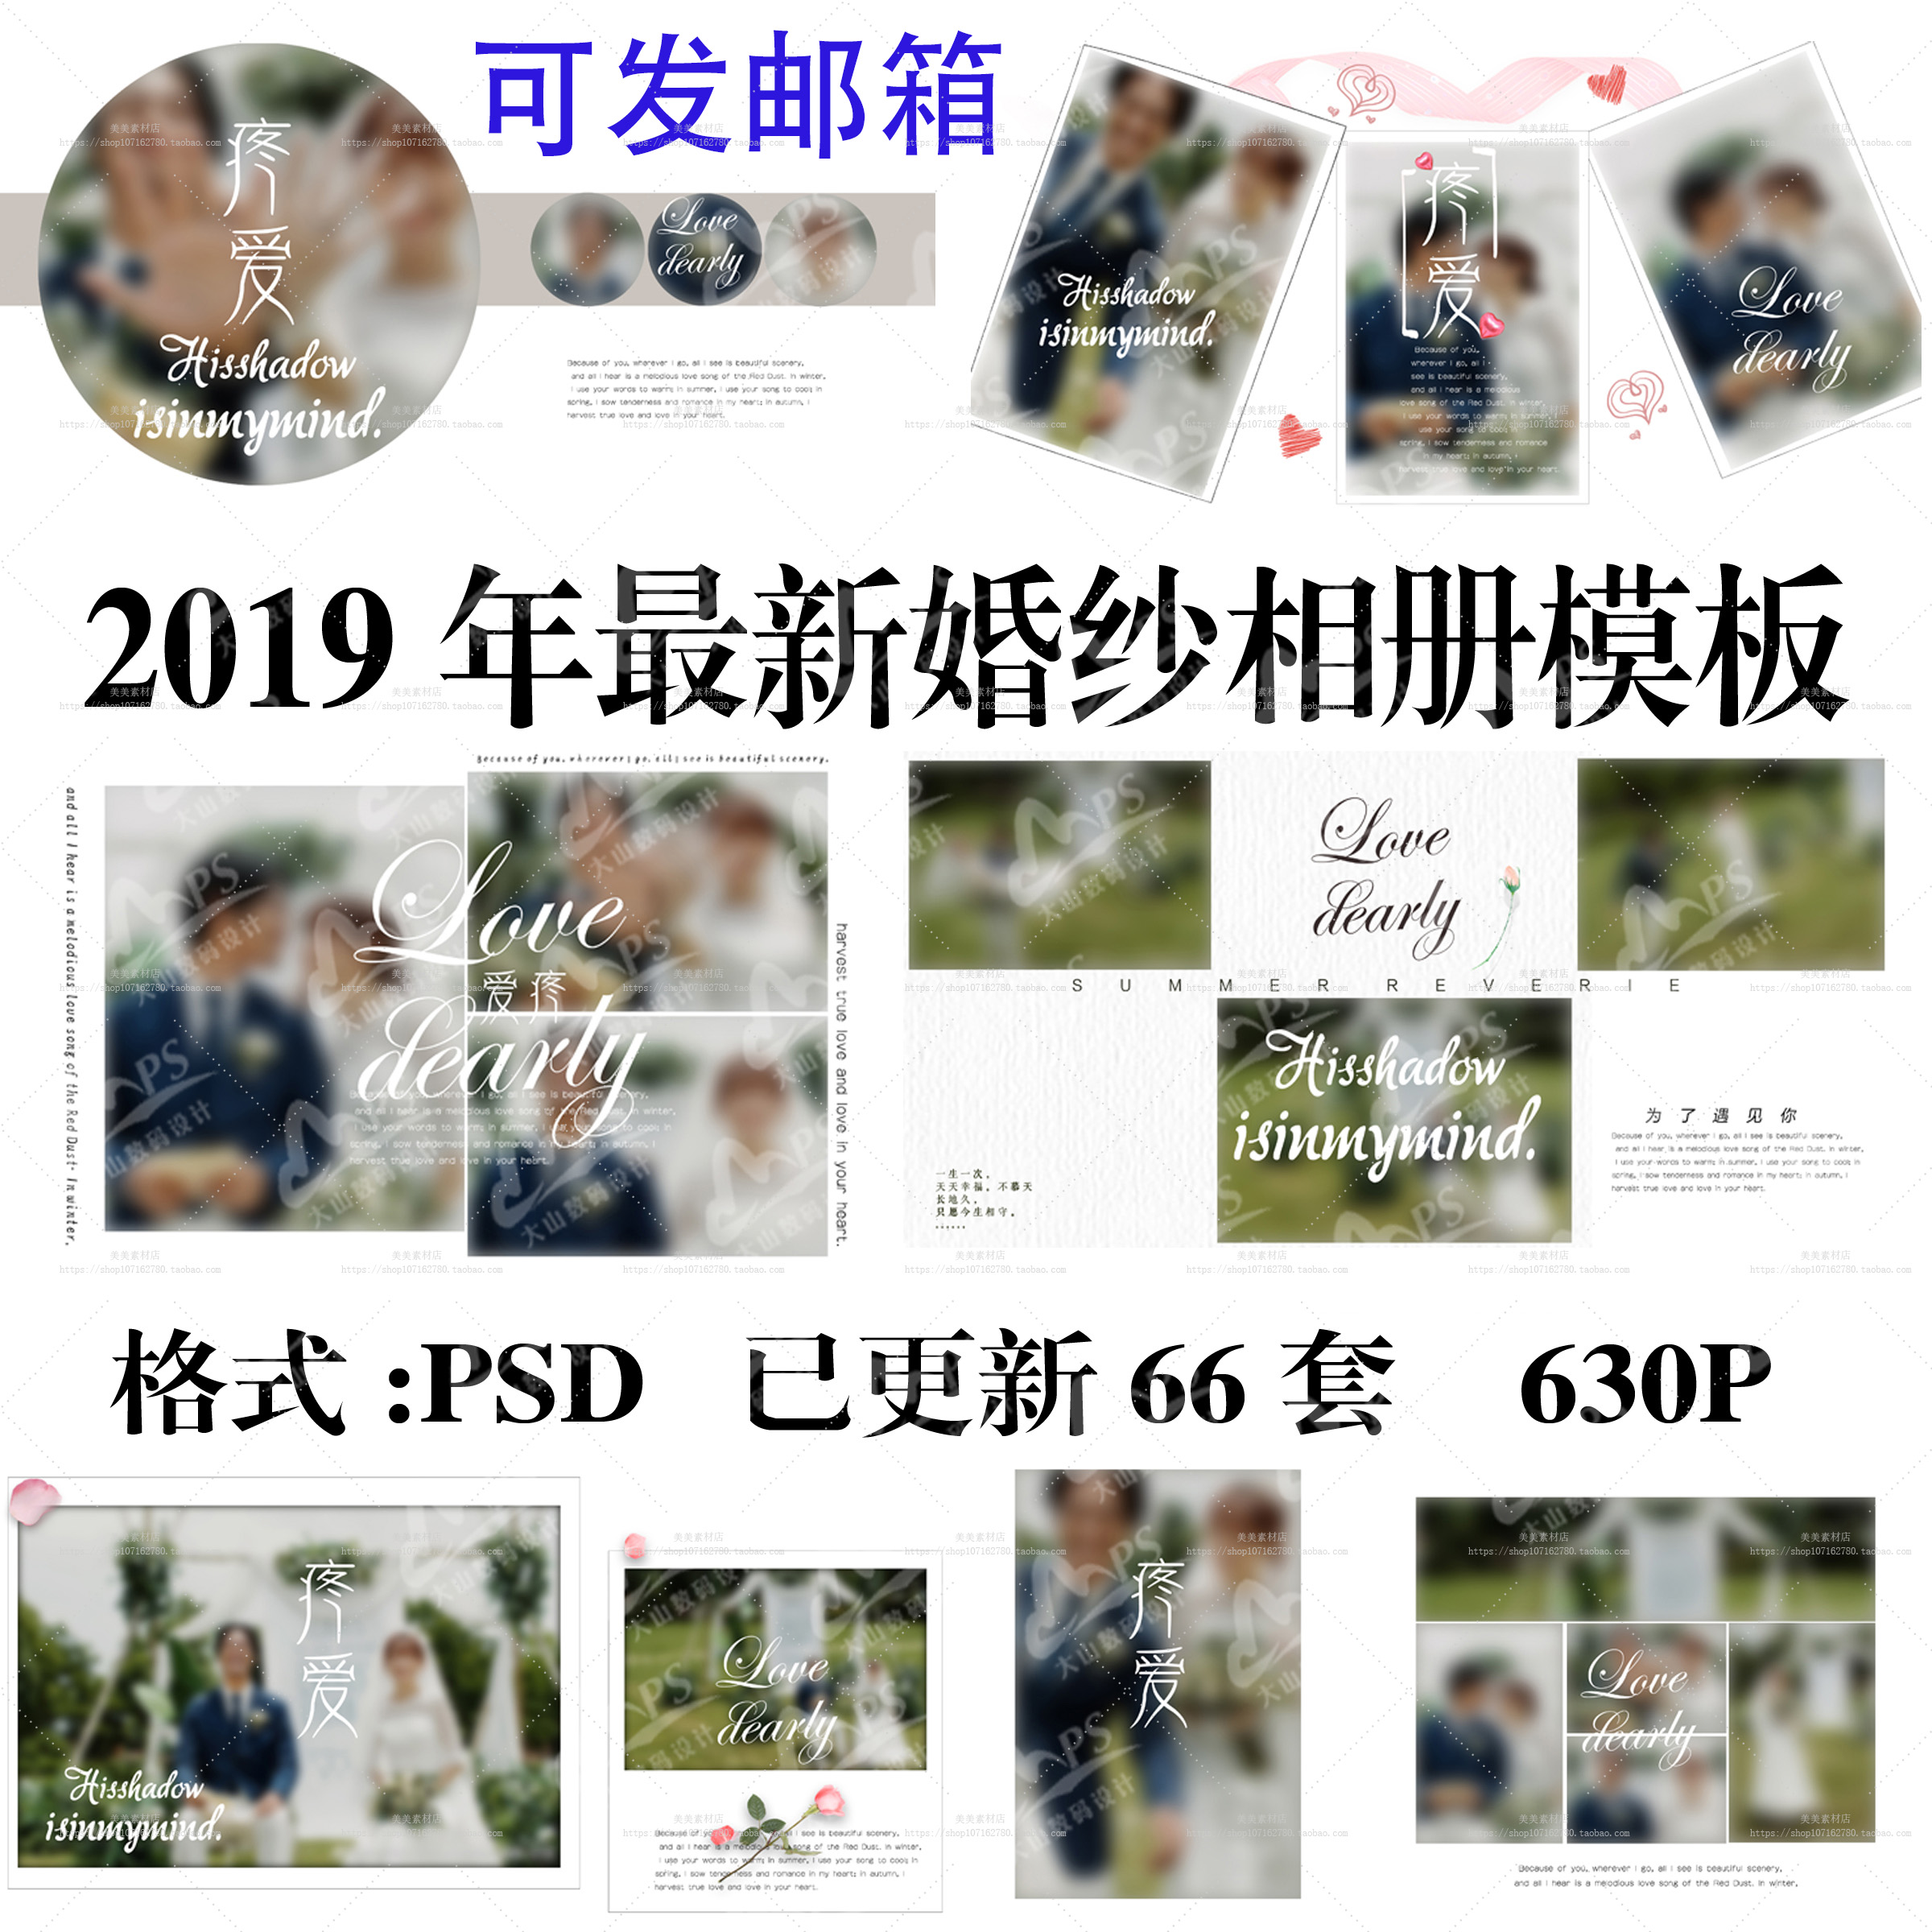 2019年全新影楼婚纱照写真韩式唯美大气简洁相册PSD模板版面设计